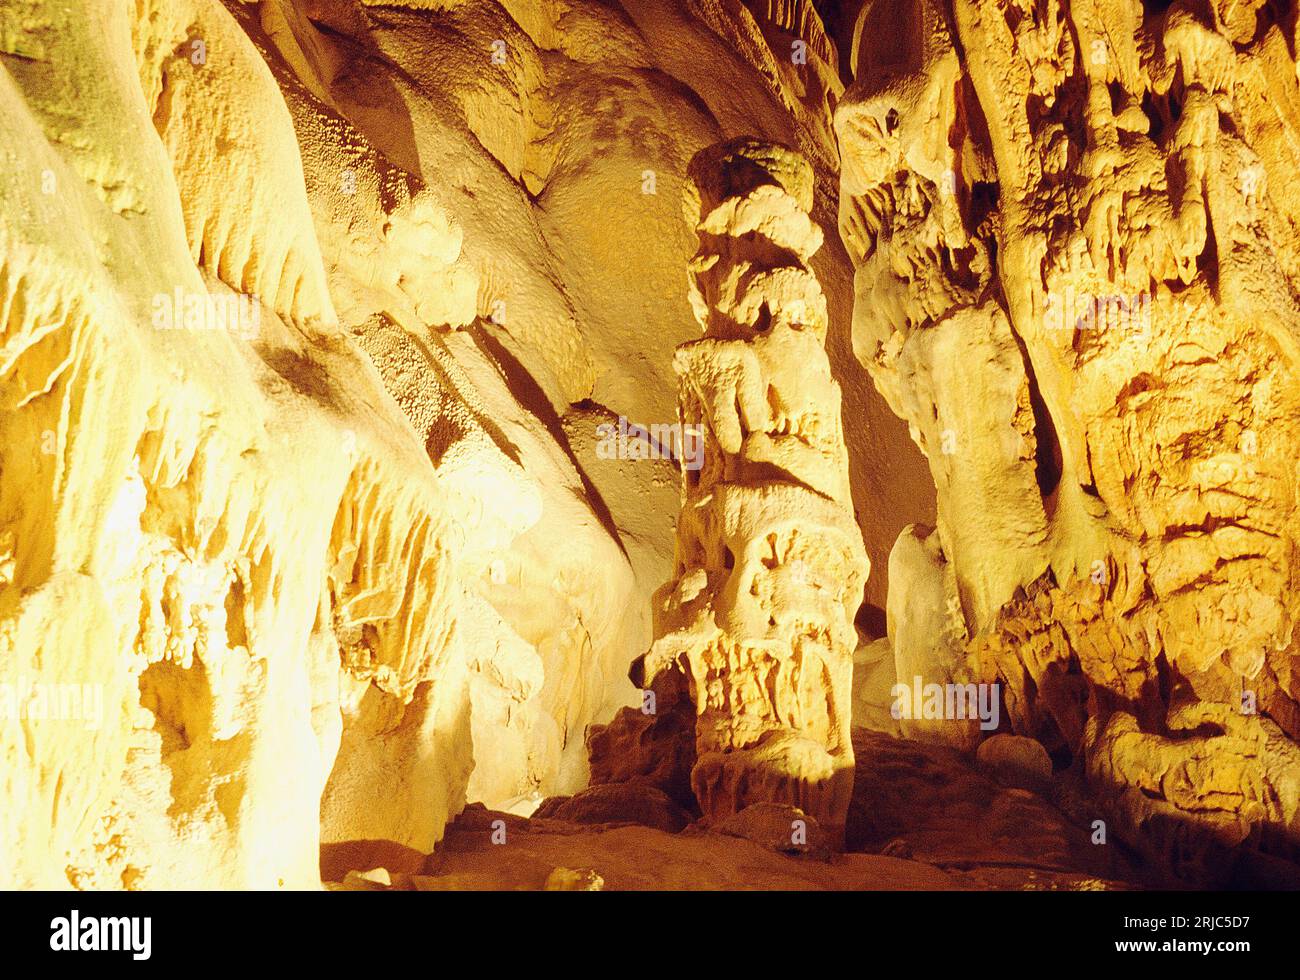 El Canelobre cave. Busot, Alicante province, Comunidad Valenciana, Spain. Stock Photo